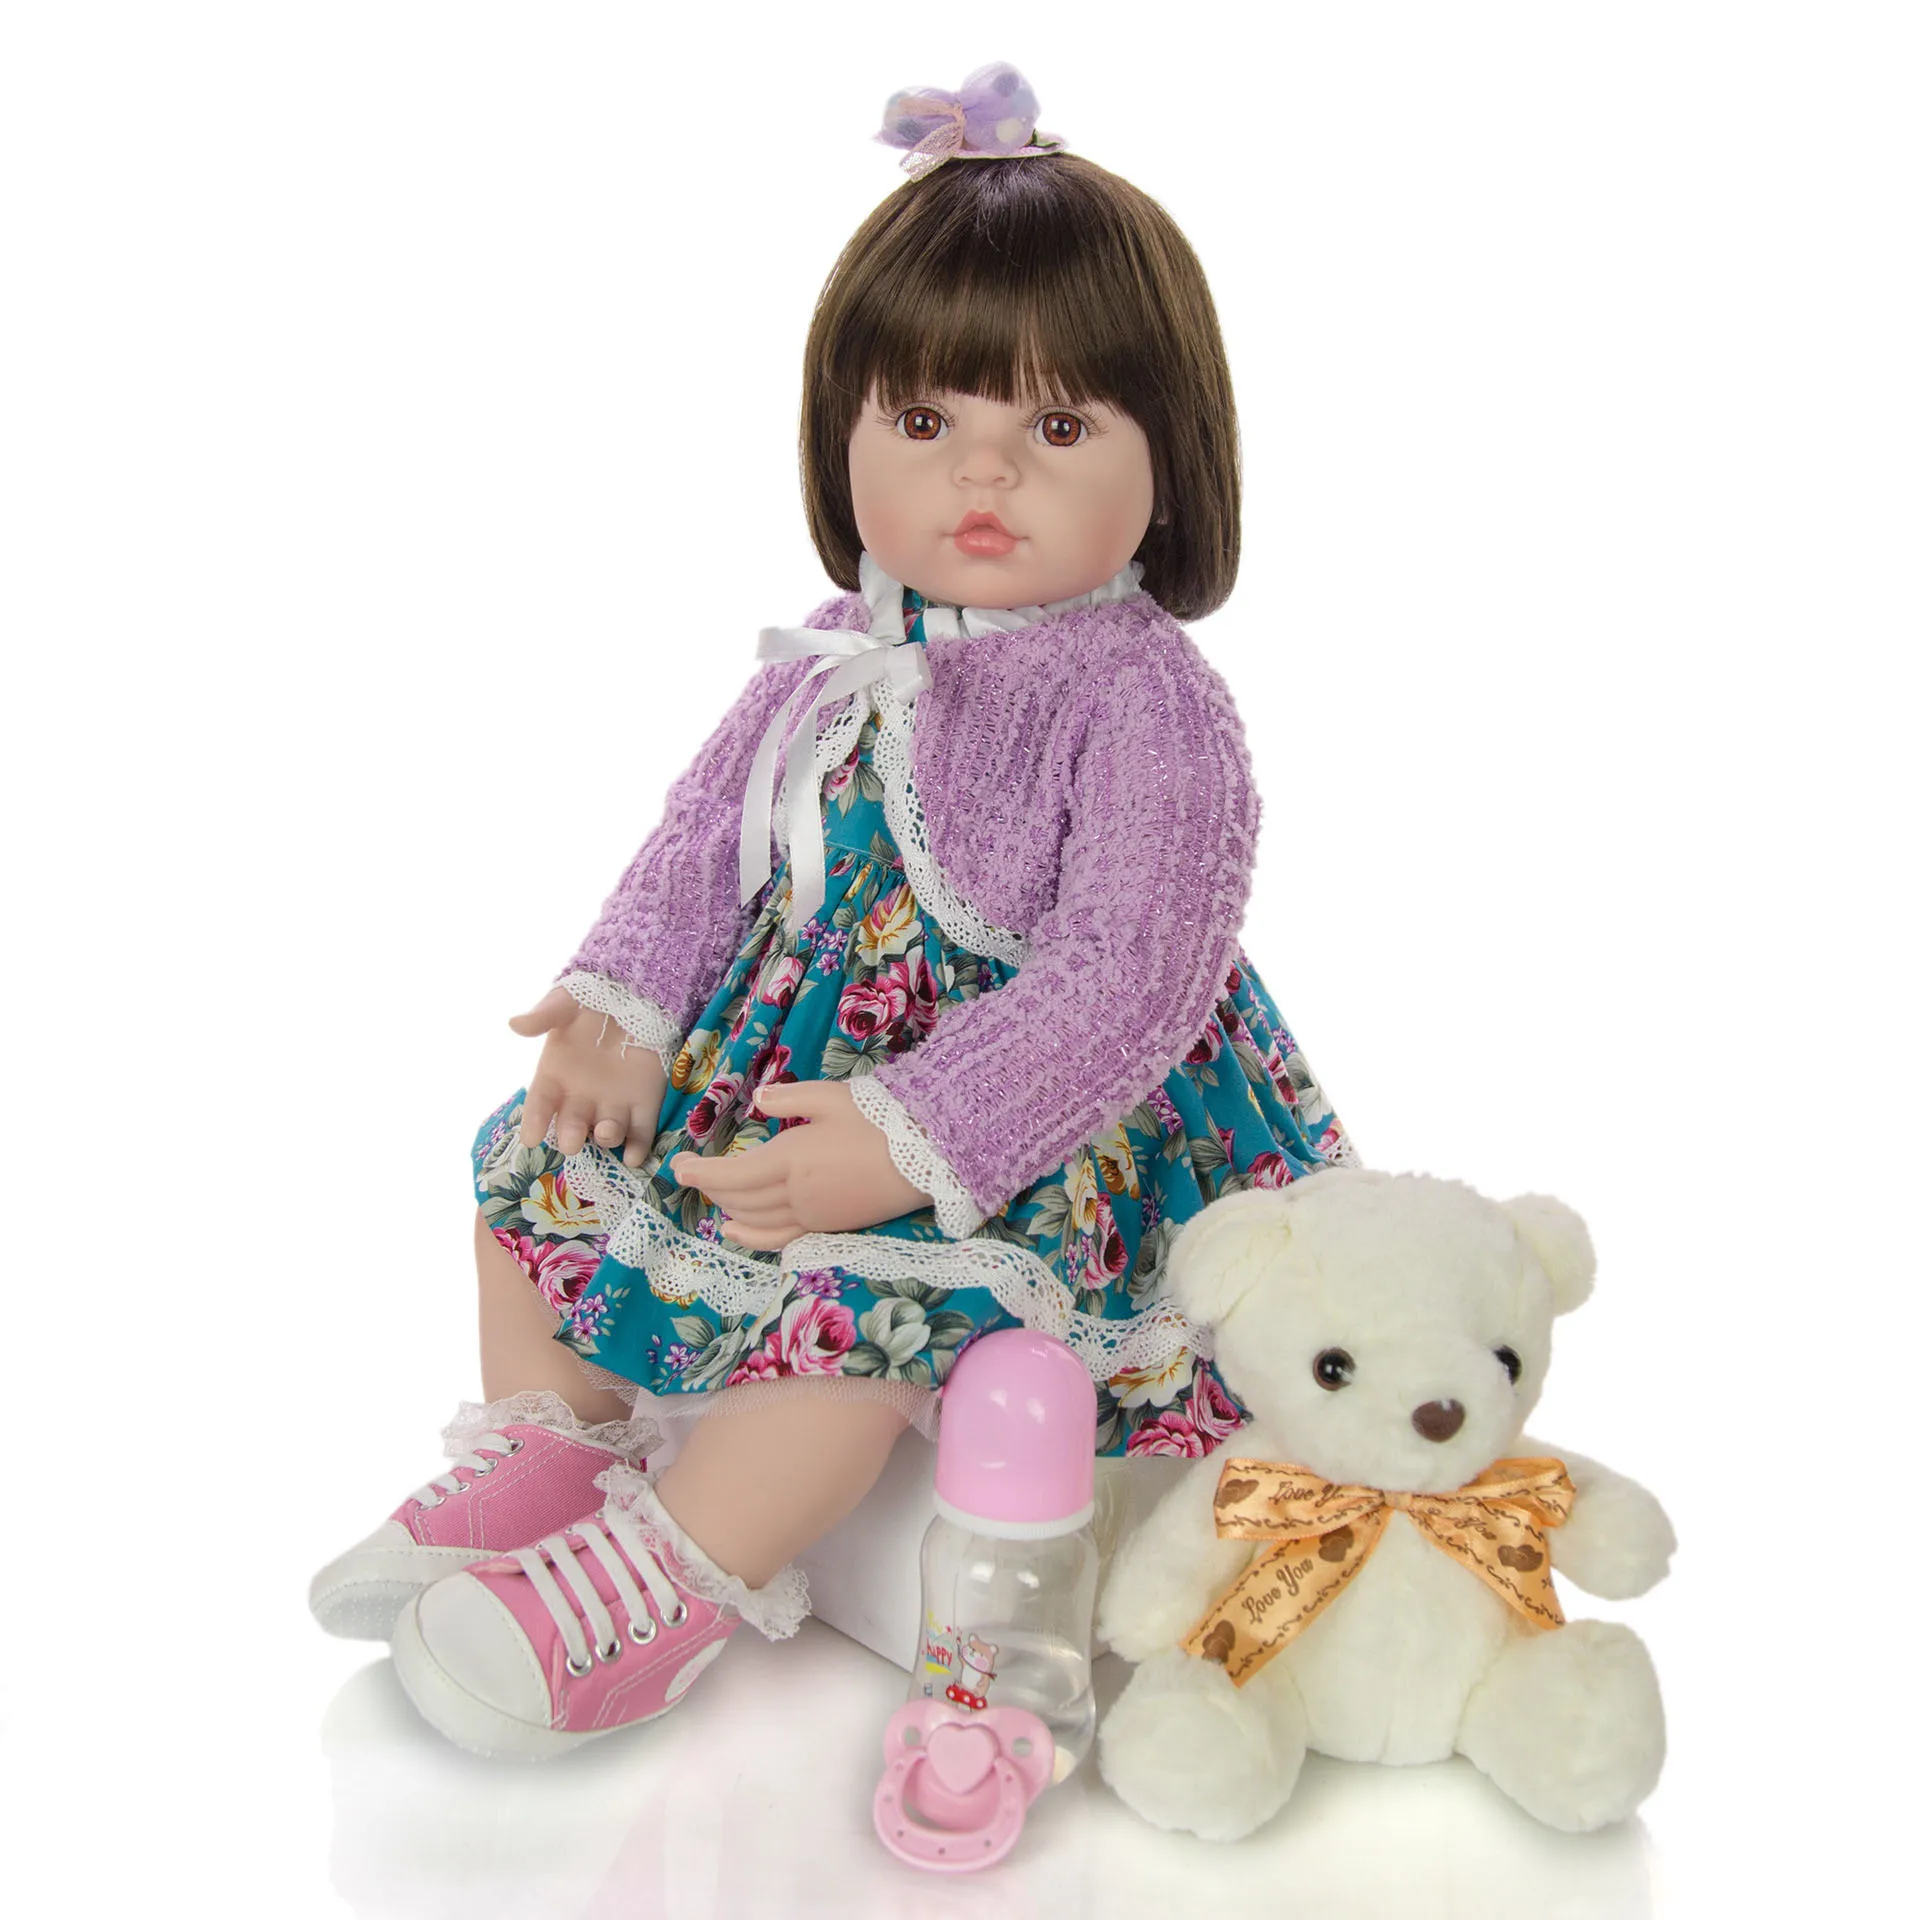 

KEIUMI 24 дюйма кукла реборн девочка 60 см силиконовая Мягкая Реалистичная принцесса реборн для продажи детский подарок на день рождения Рождес...